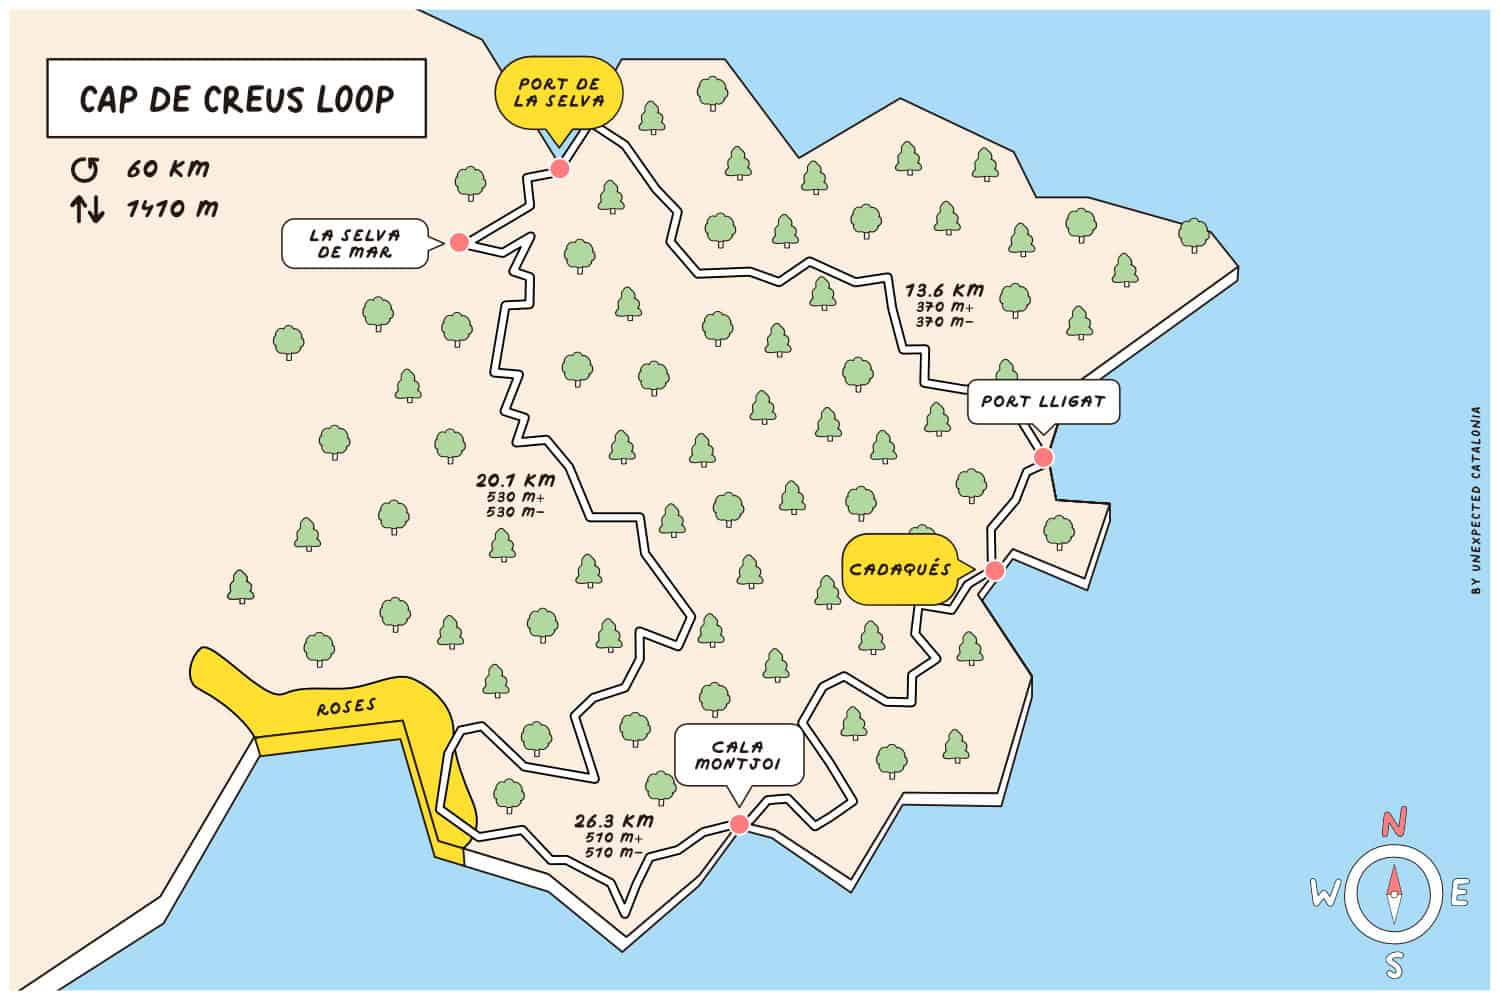 Map of the Cap de Creus loop